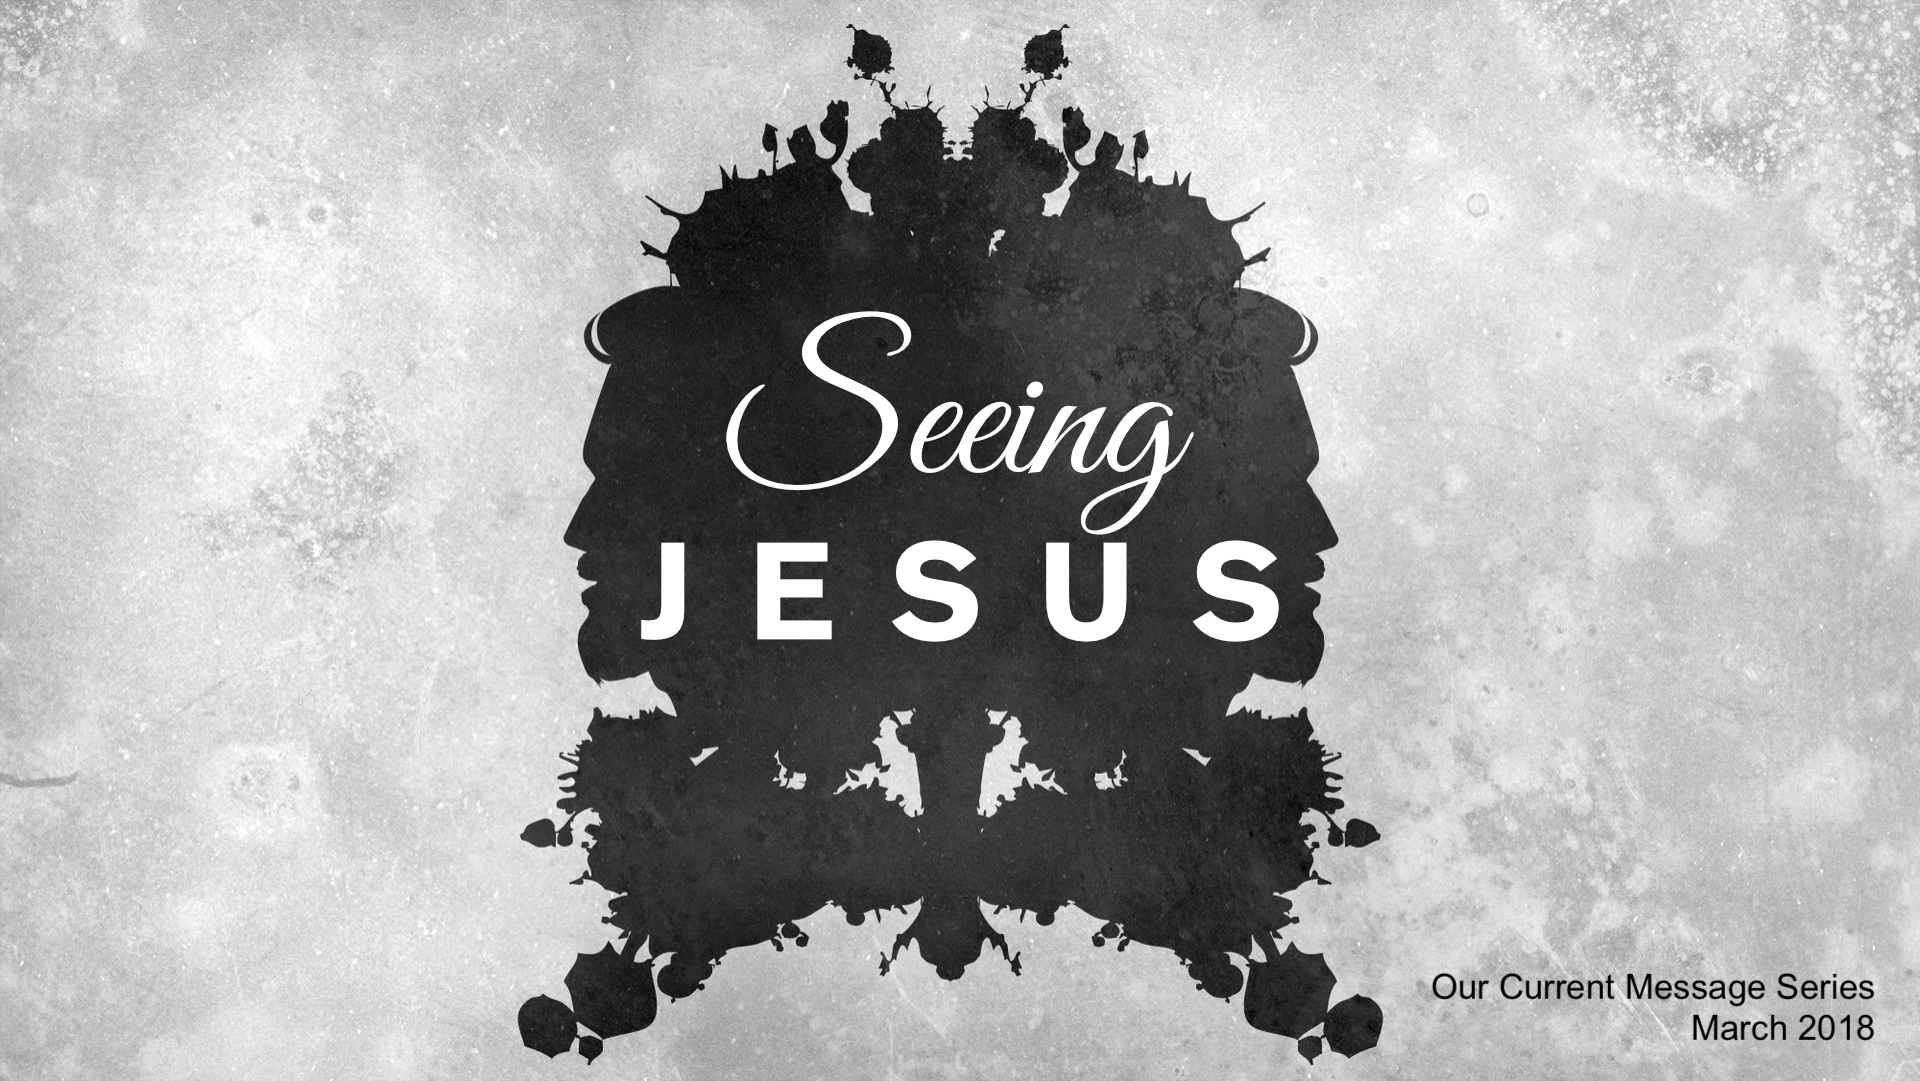 Seeing Jesus message series logo